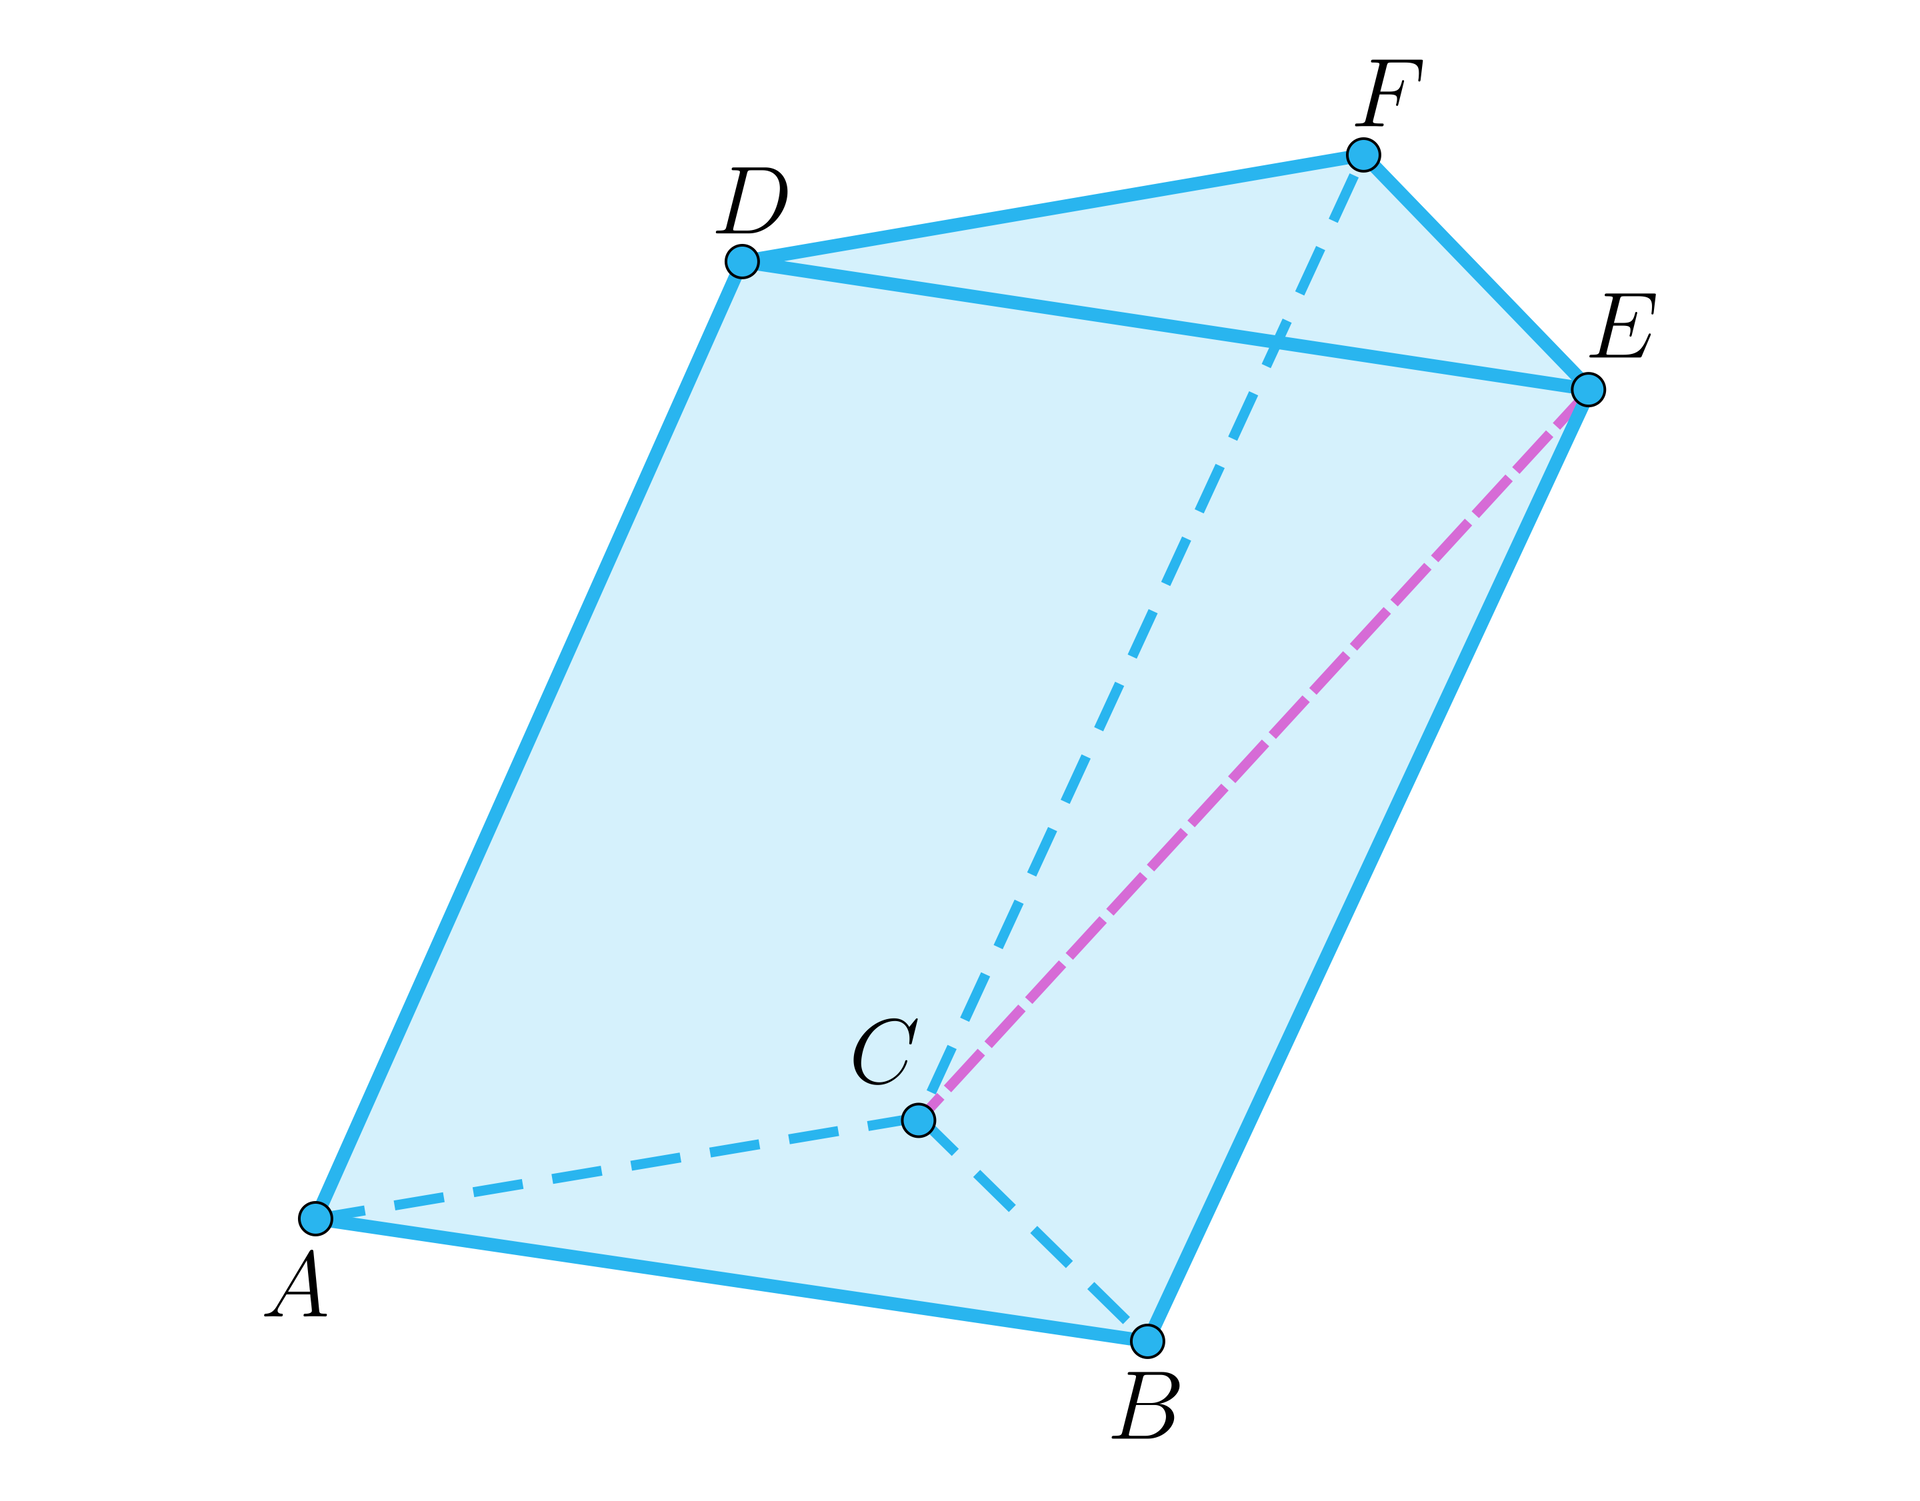 Na ilustracji przedstawiono graniastosłup pochyły trójkątny o podstawie dolnej ABC, oraz górnej DEF. Odpowiednio nad wierzchołkiem A, znajduje się wierzchołek D, nad wierzchołkiem B, wierzchołek E, oraz nad wierzchołkiem C, znajduje się wierzchołek F. Zaznaczono przekątną CE ściany bocznej.